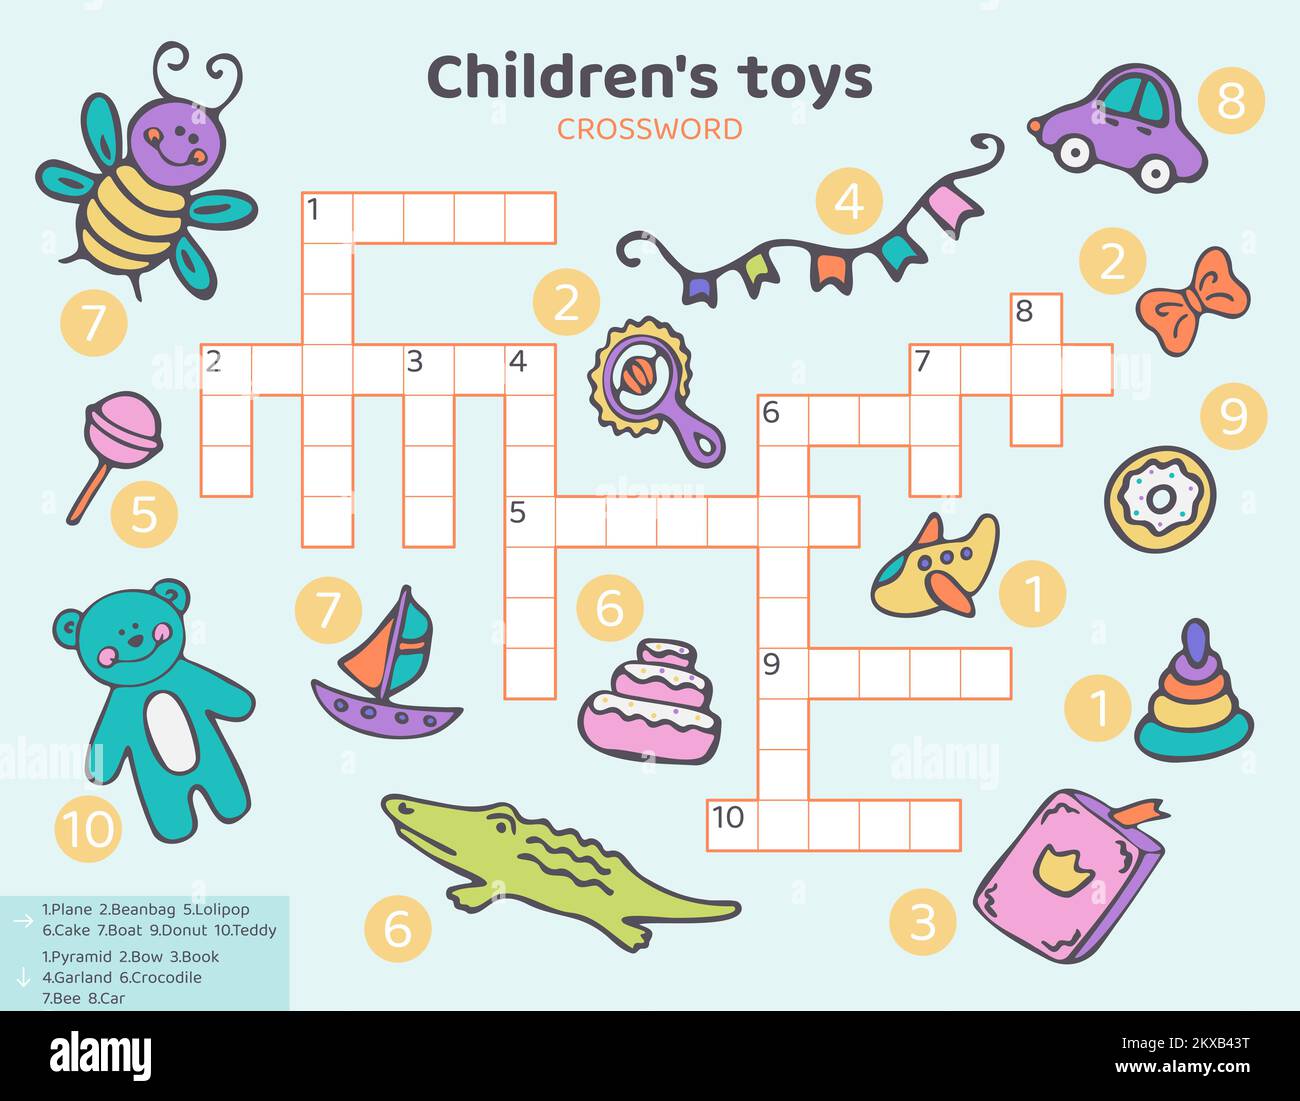 Inglese Crossword per bambini con giocattoli per bambini. Illustrazione Vettoriale